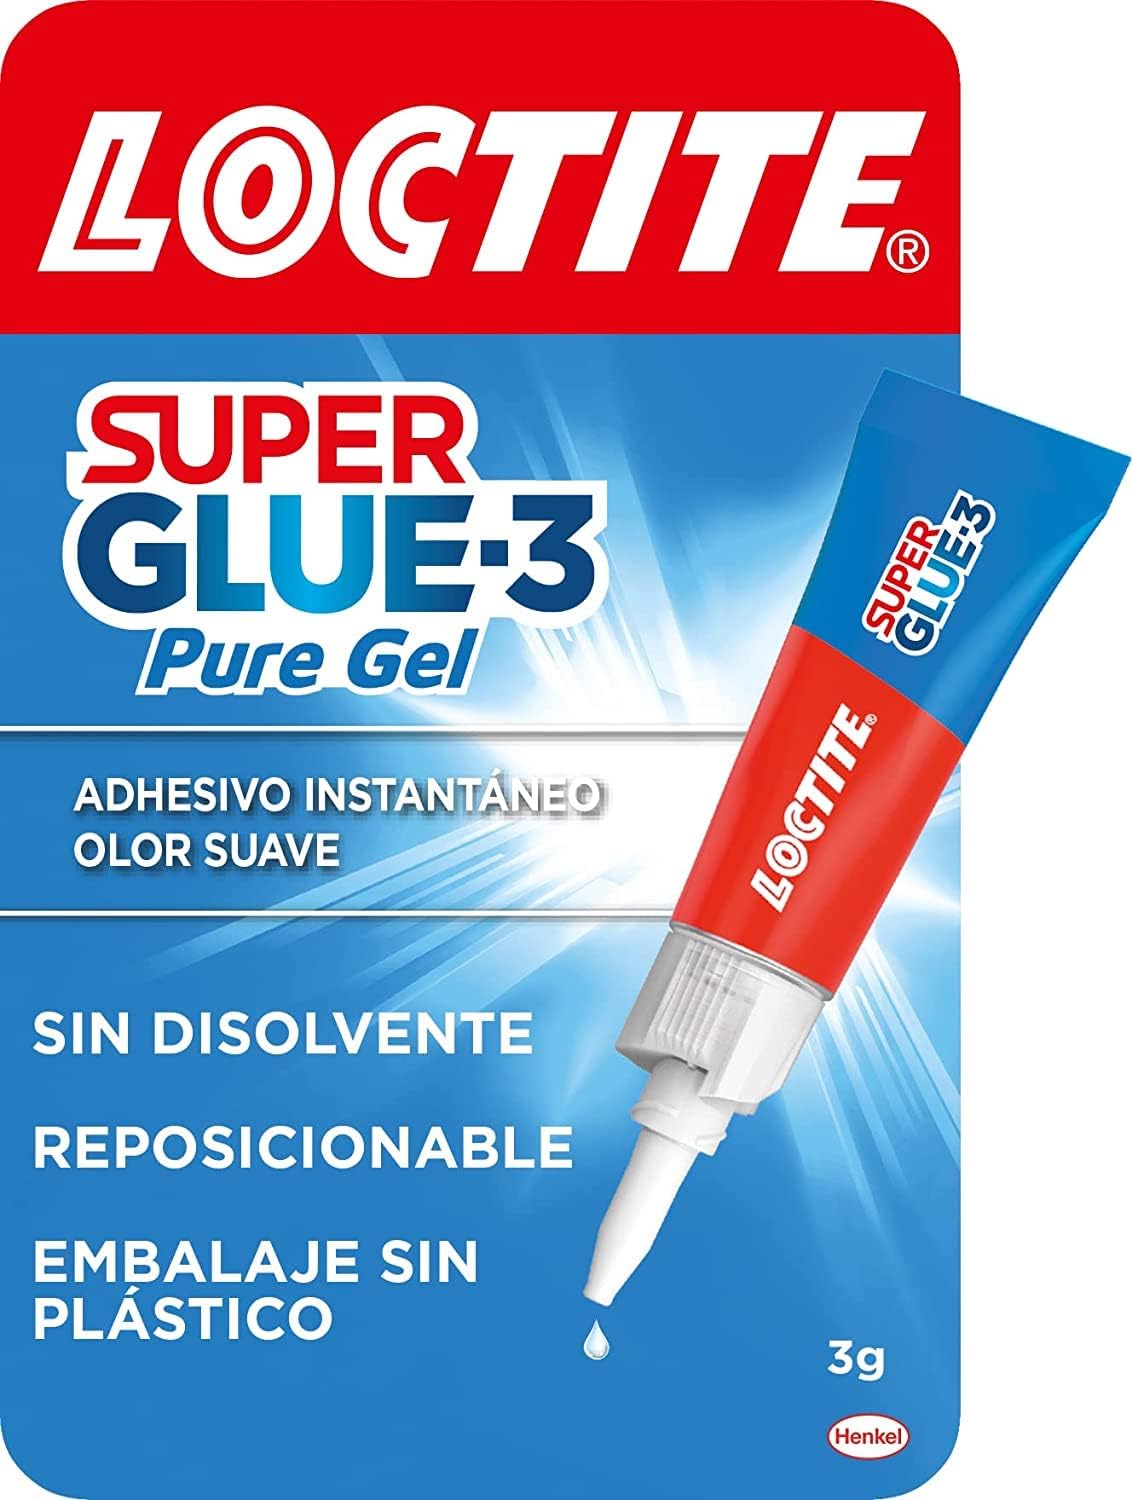 Pegamento LOCTITE Super Glue-3 Pure Gel 3g